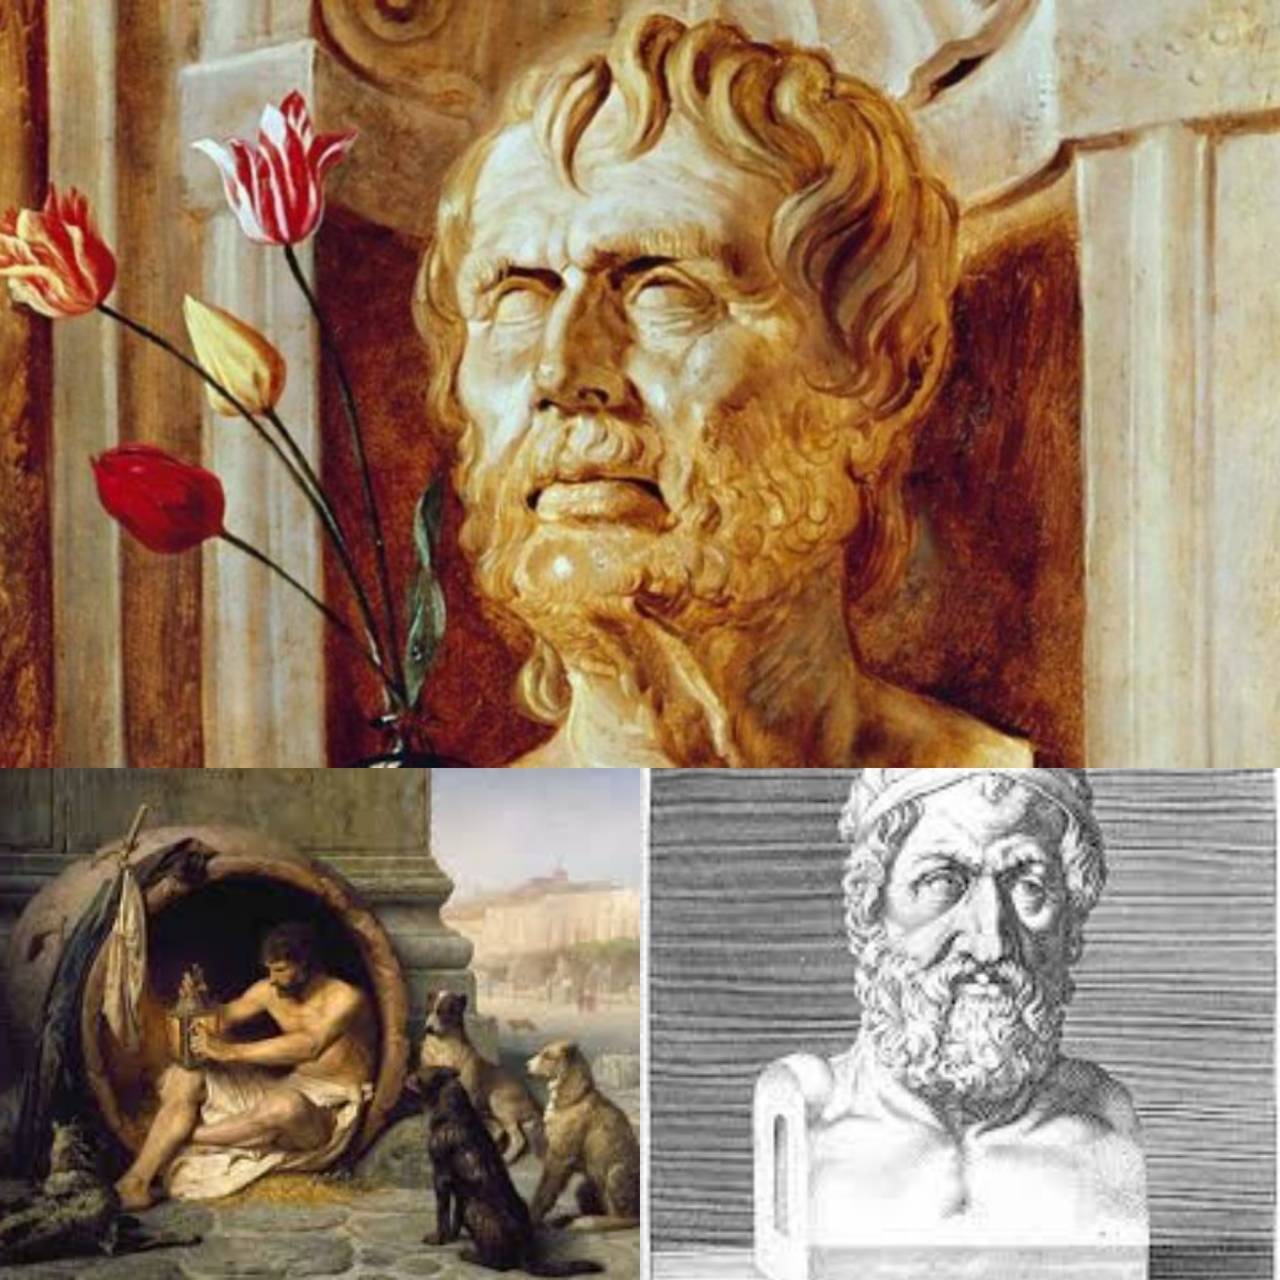 Stoicismul – O propunere pentru o viață plină de seninătate